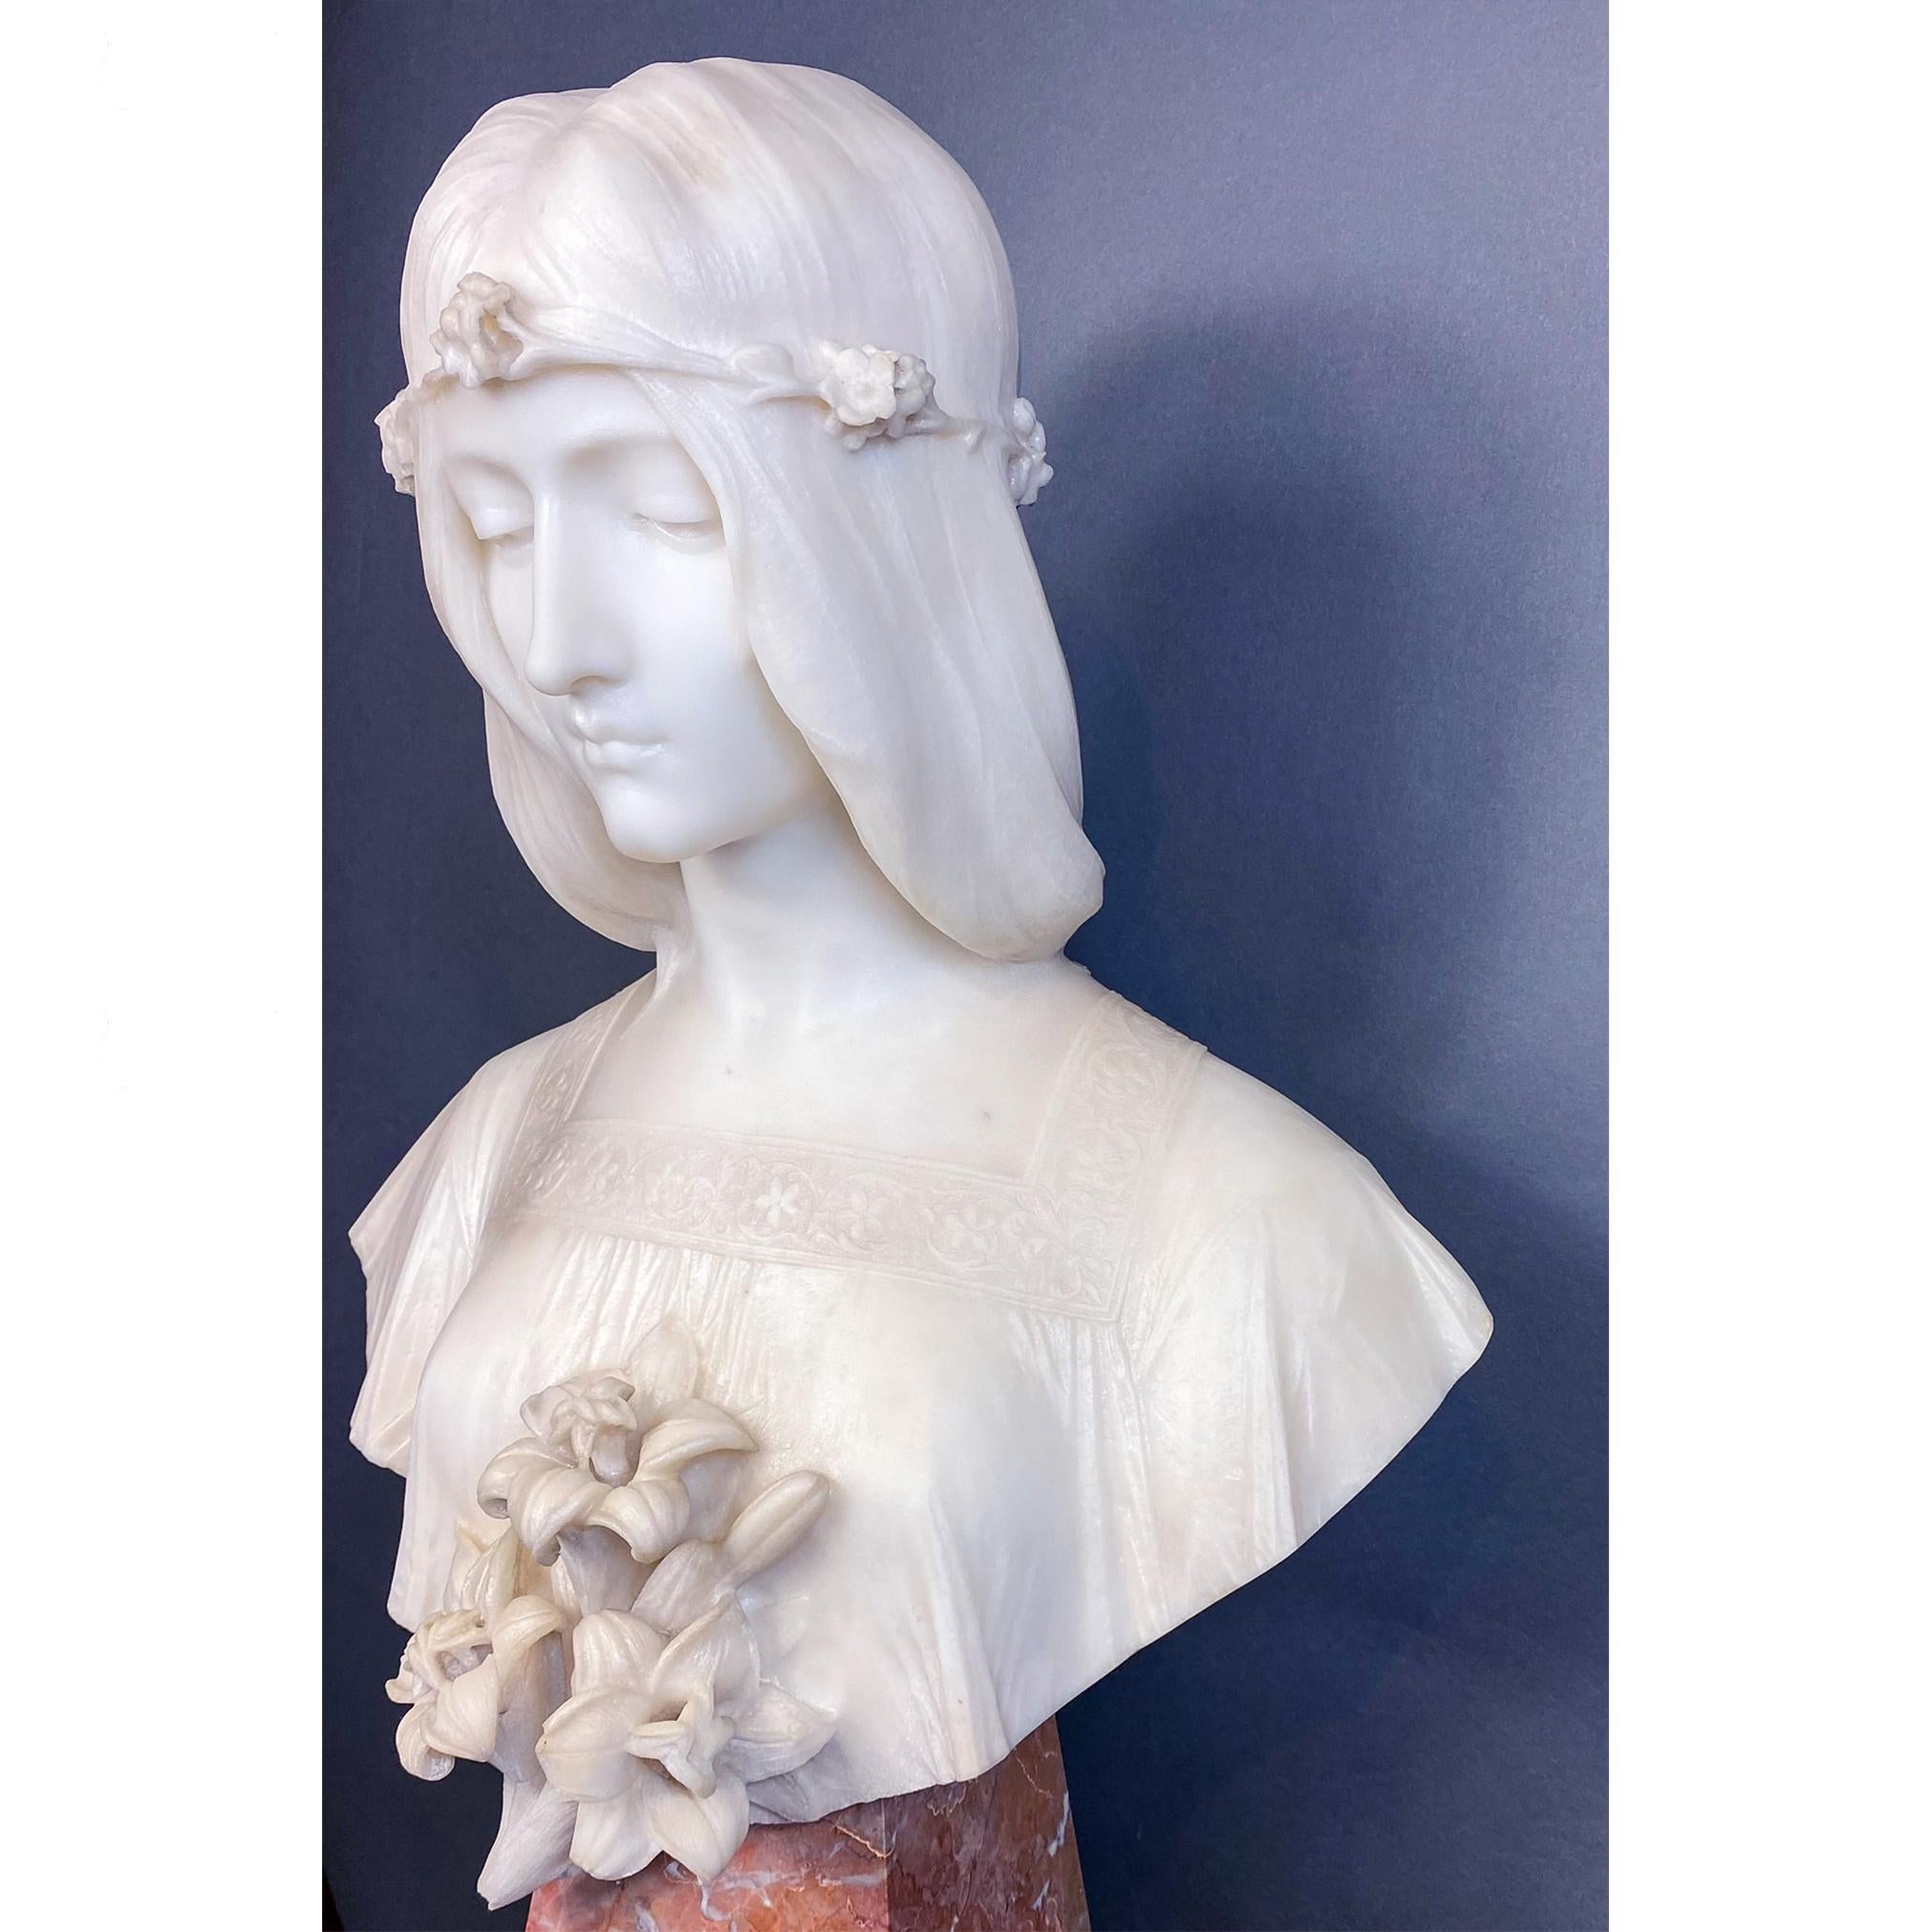 Magnifique buste féminin portant un haut brodé à encolure carrée et une couronne de fleurs. Un bouquet de lys orne le devant du buste qui repose sur une base carrée effilée en marbre contrastant. De délicates draperies sont habilement modelées par